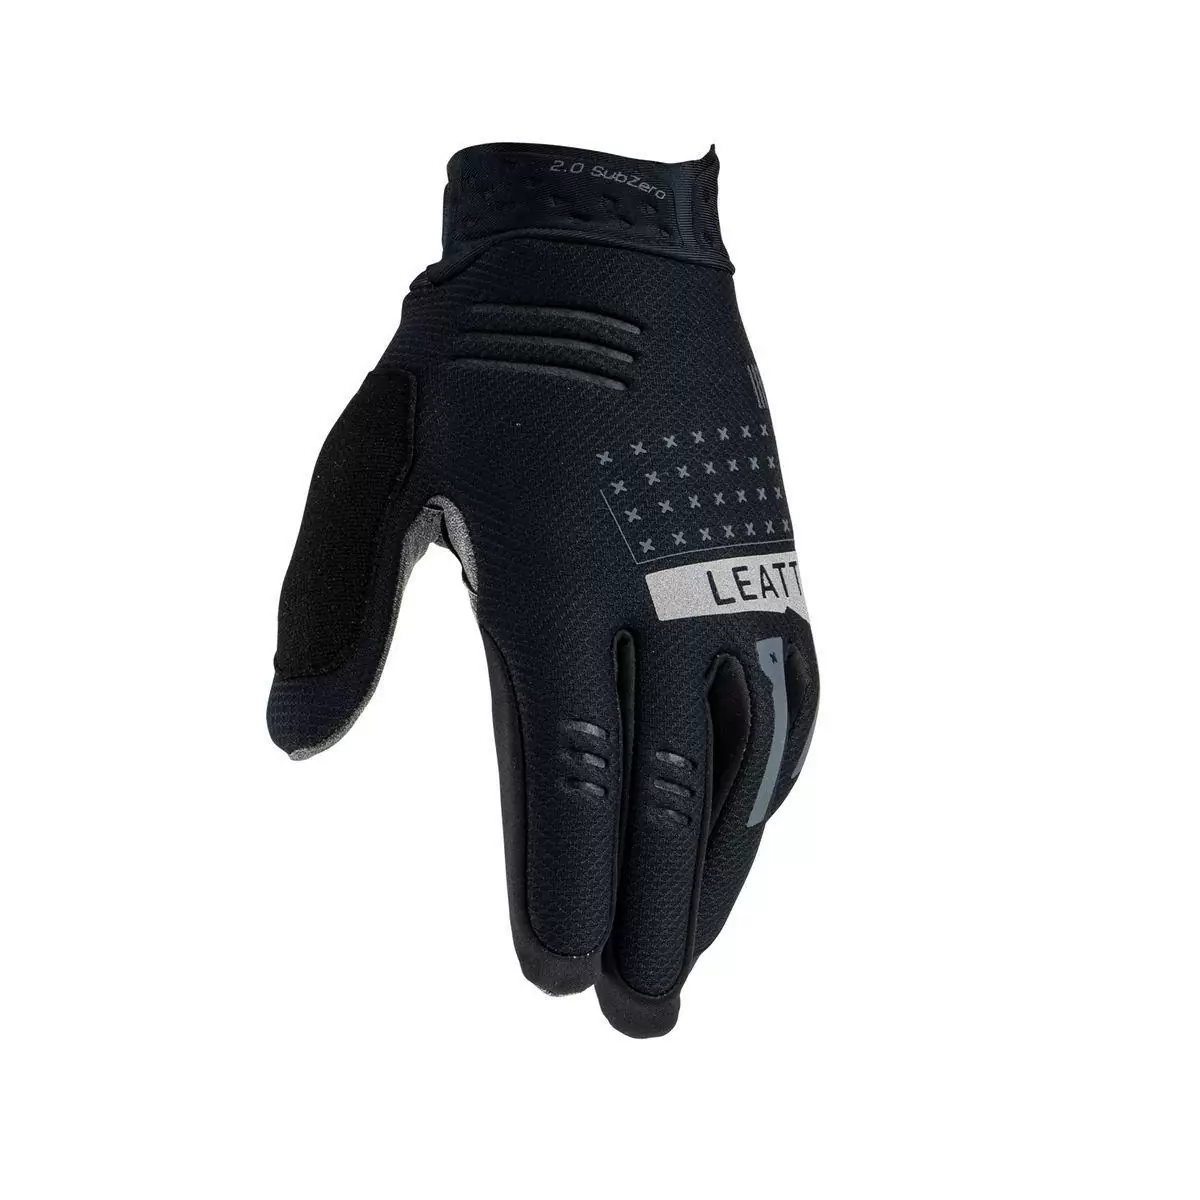 Winter Glove Mtb 2.0 subzero Black size L #4